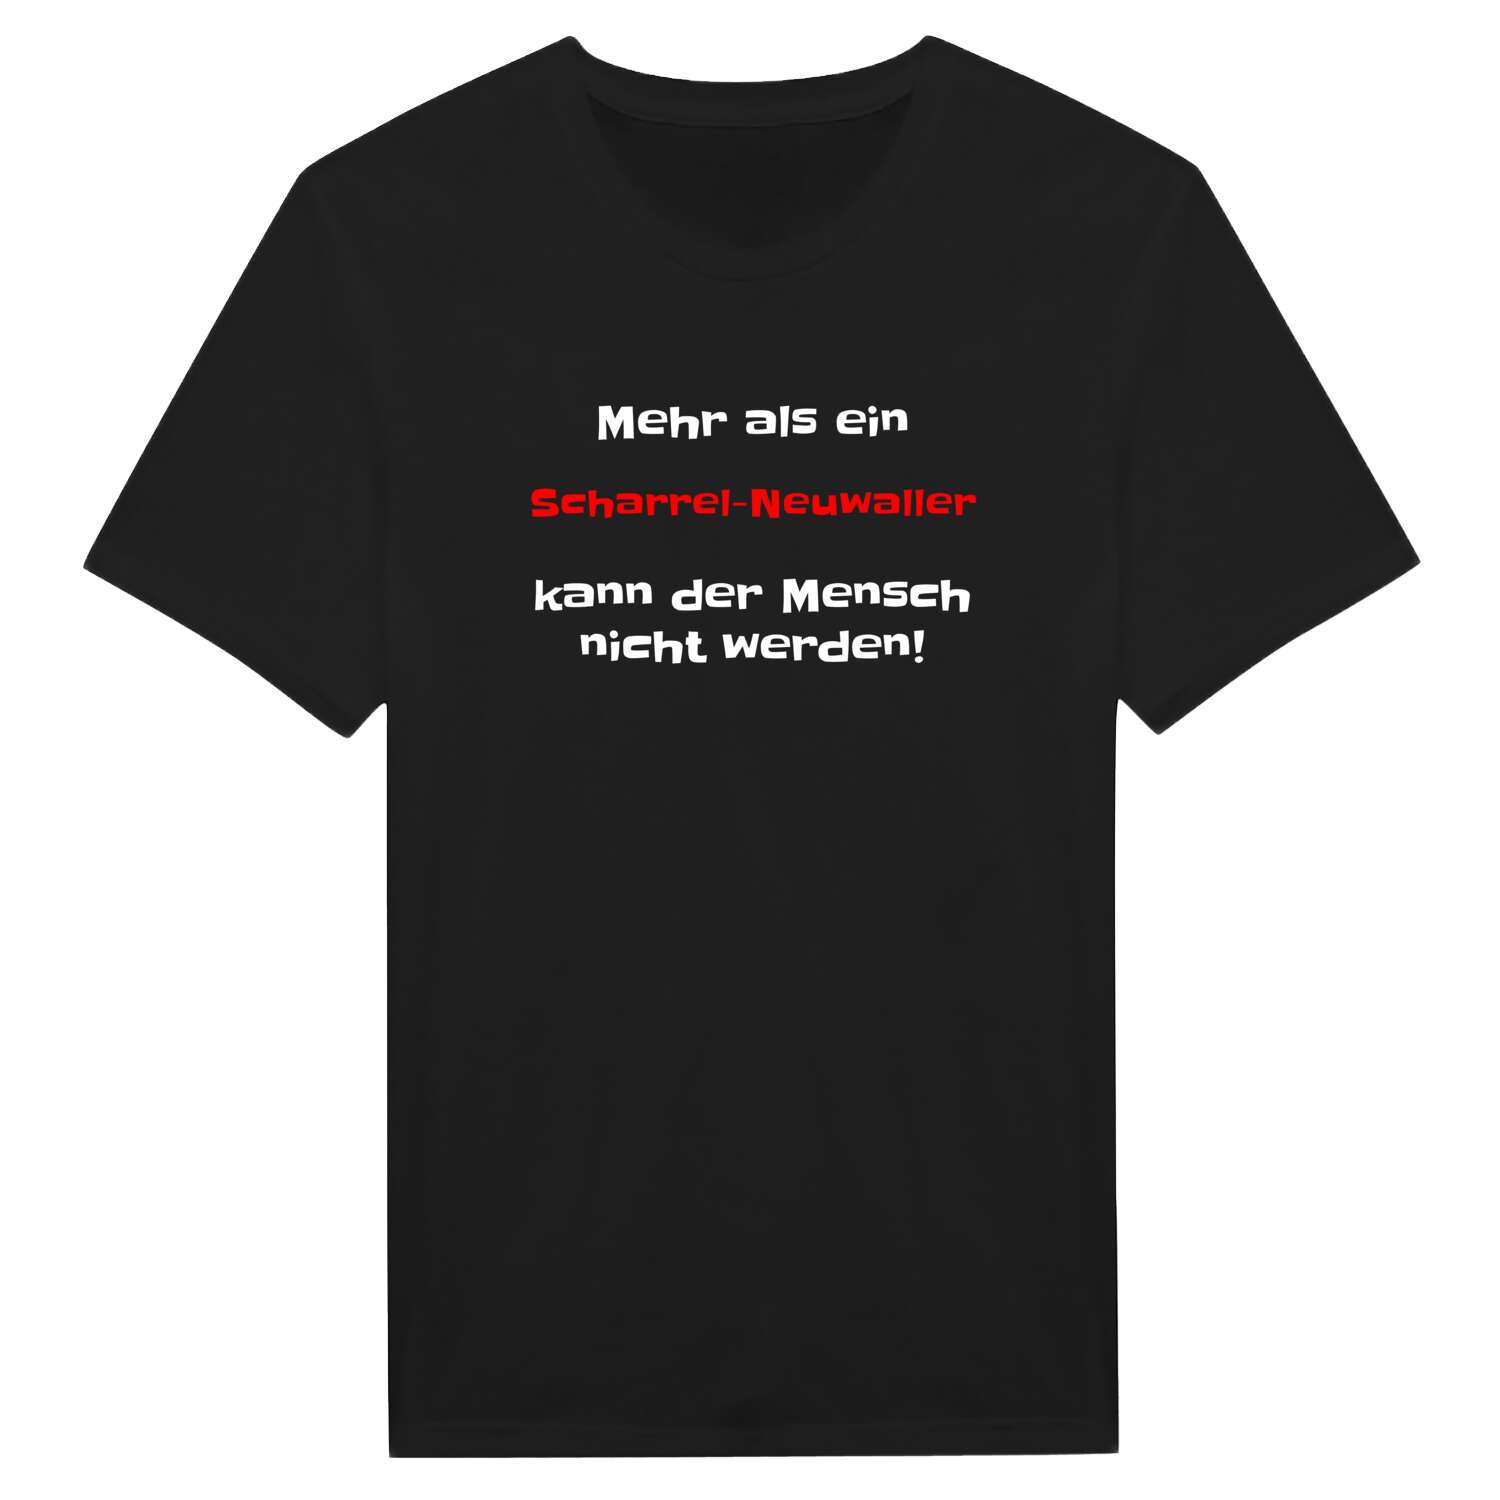 Scharrel-Neuwall T-Shirt »Mehr als ein«